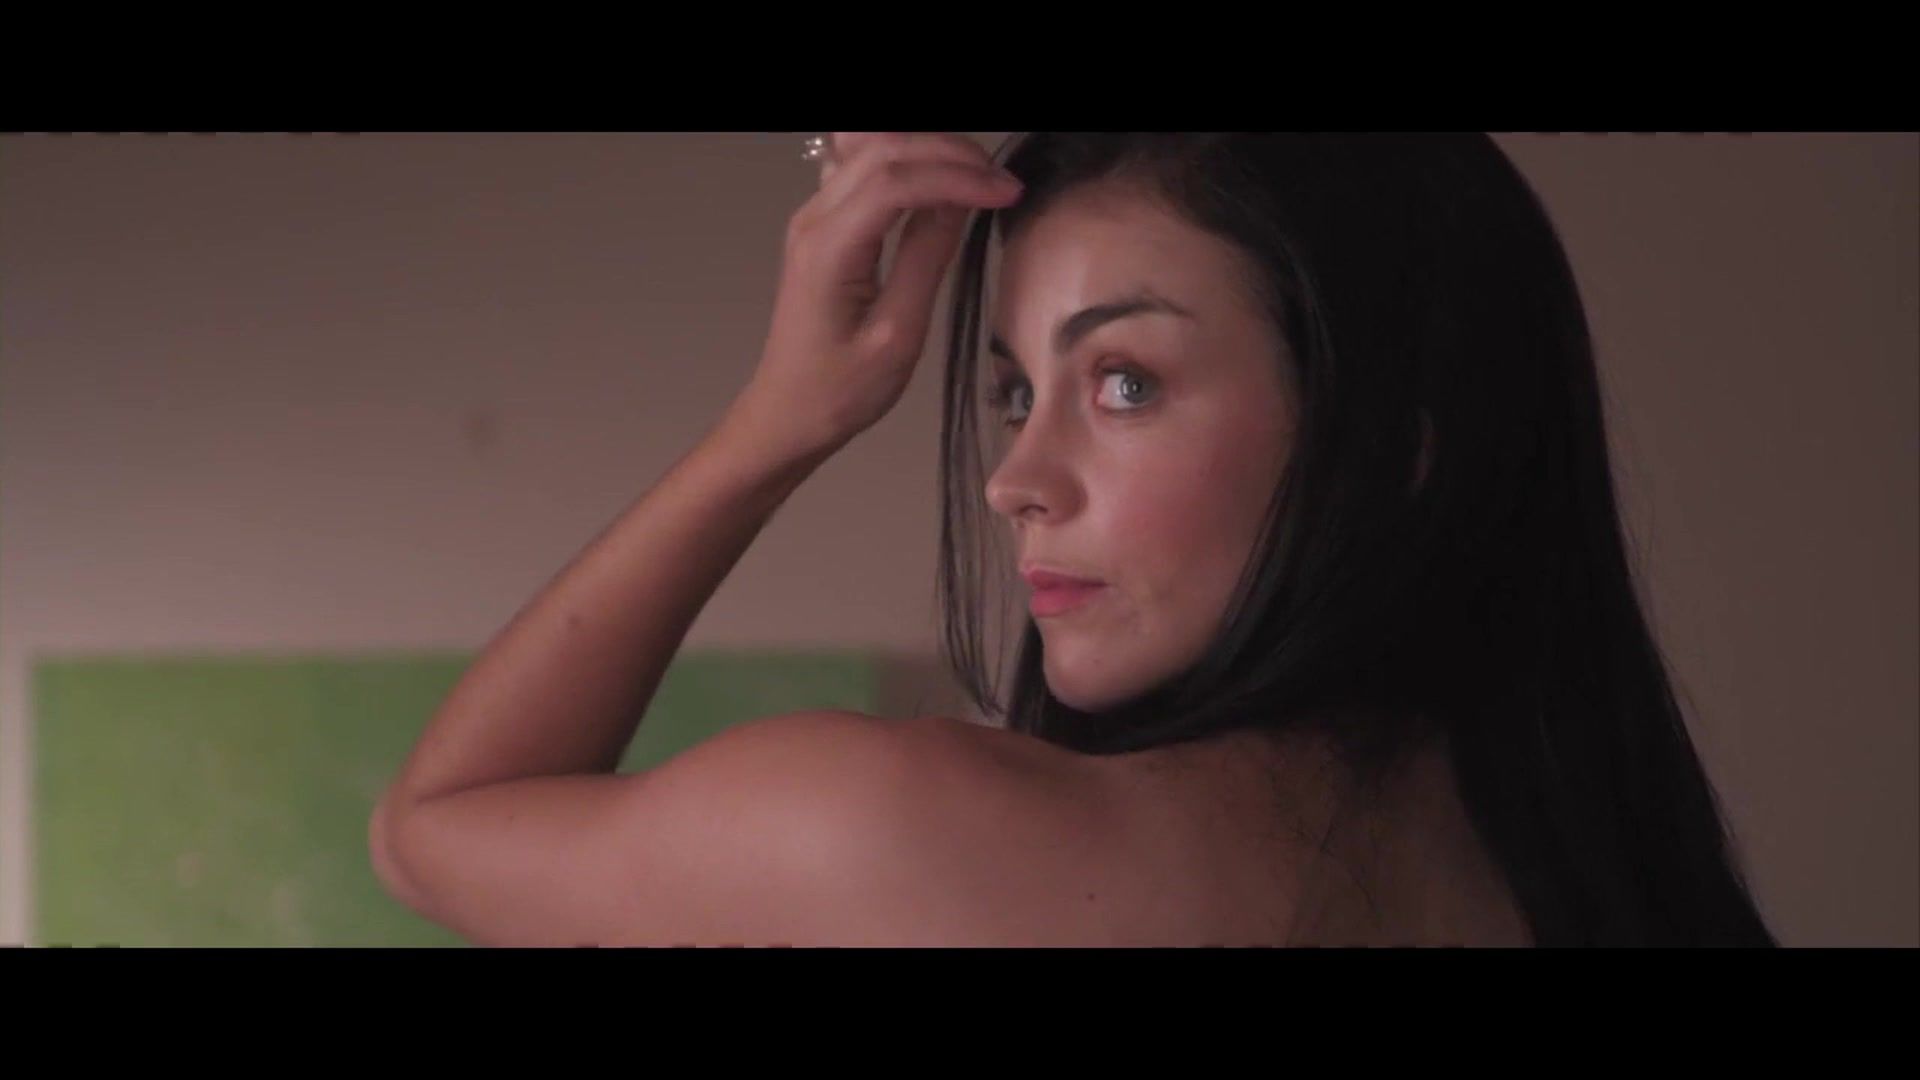 Milfporn Jessica Clarke Nude with Bra - In View (2011) Nxgx - 1